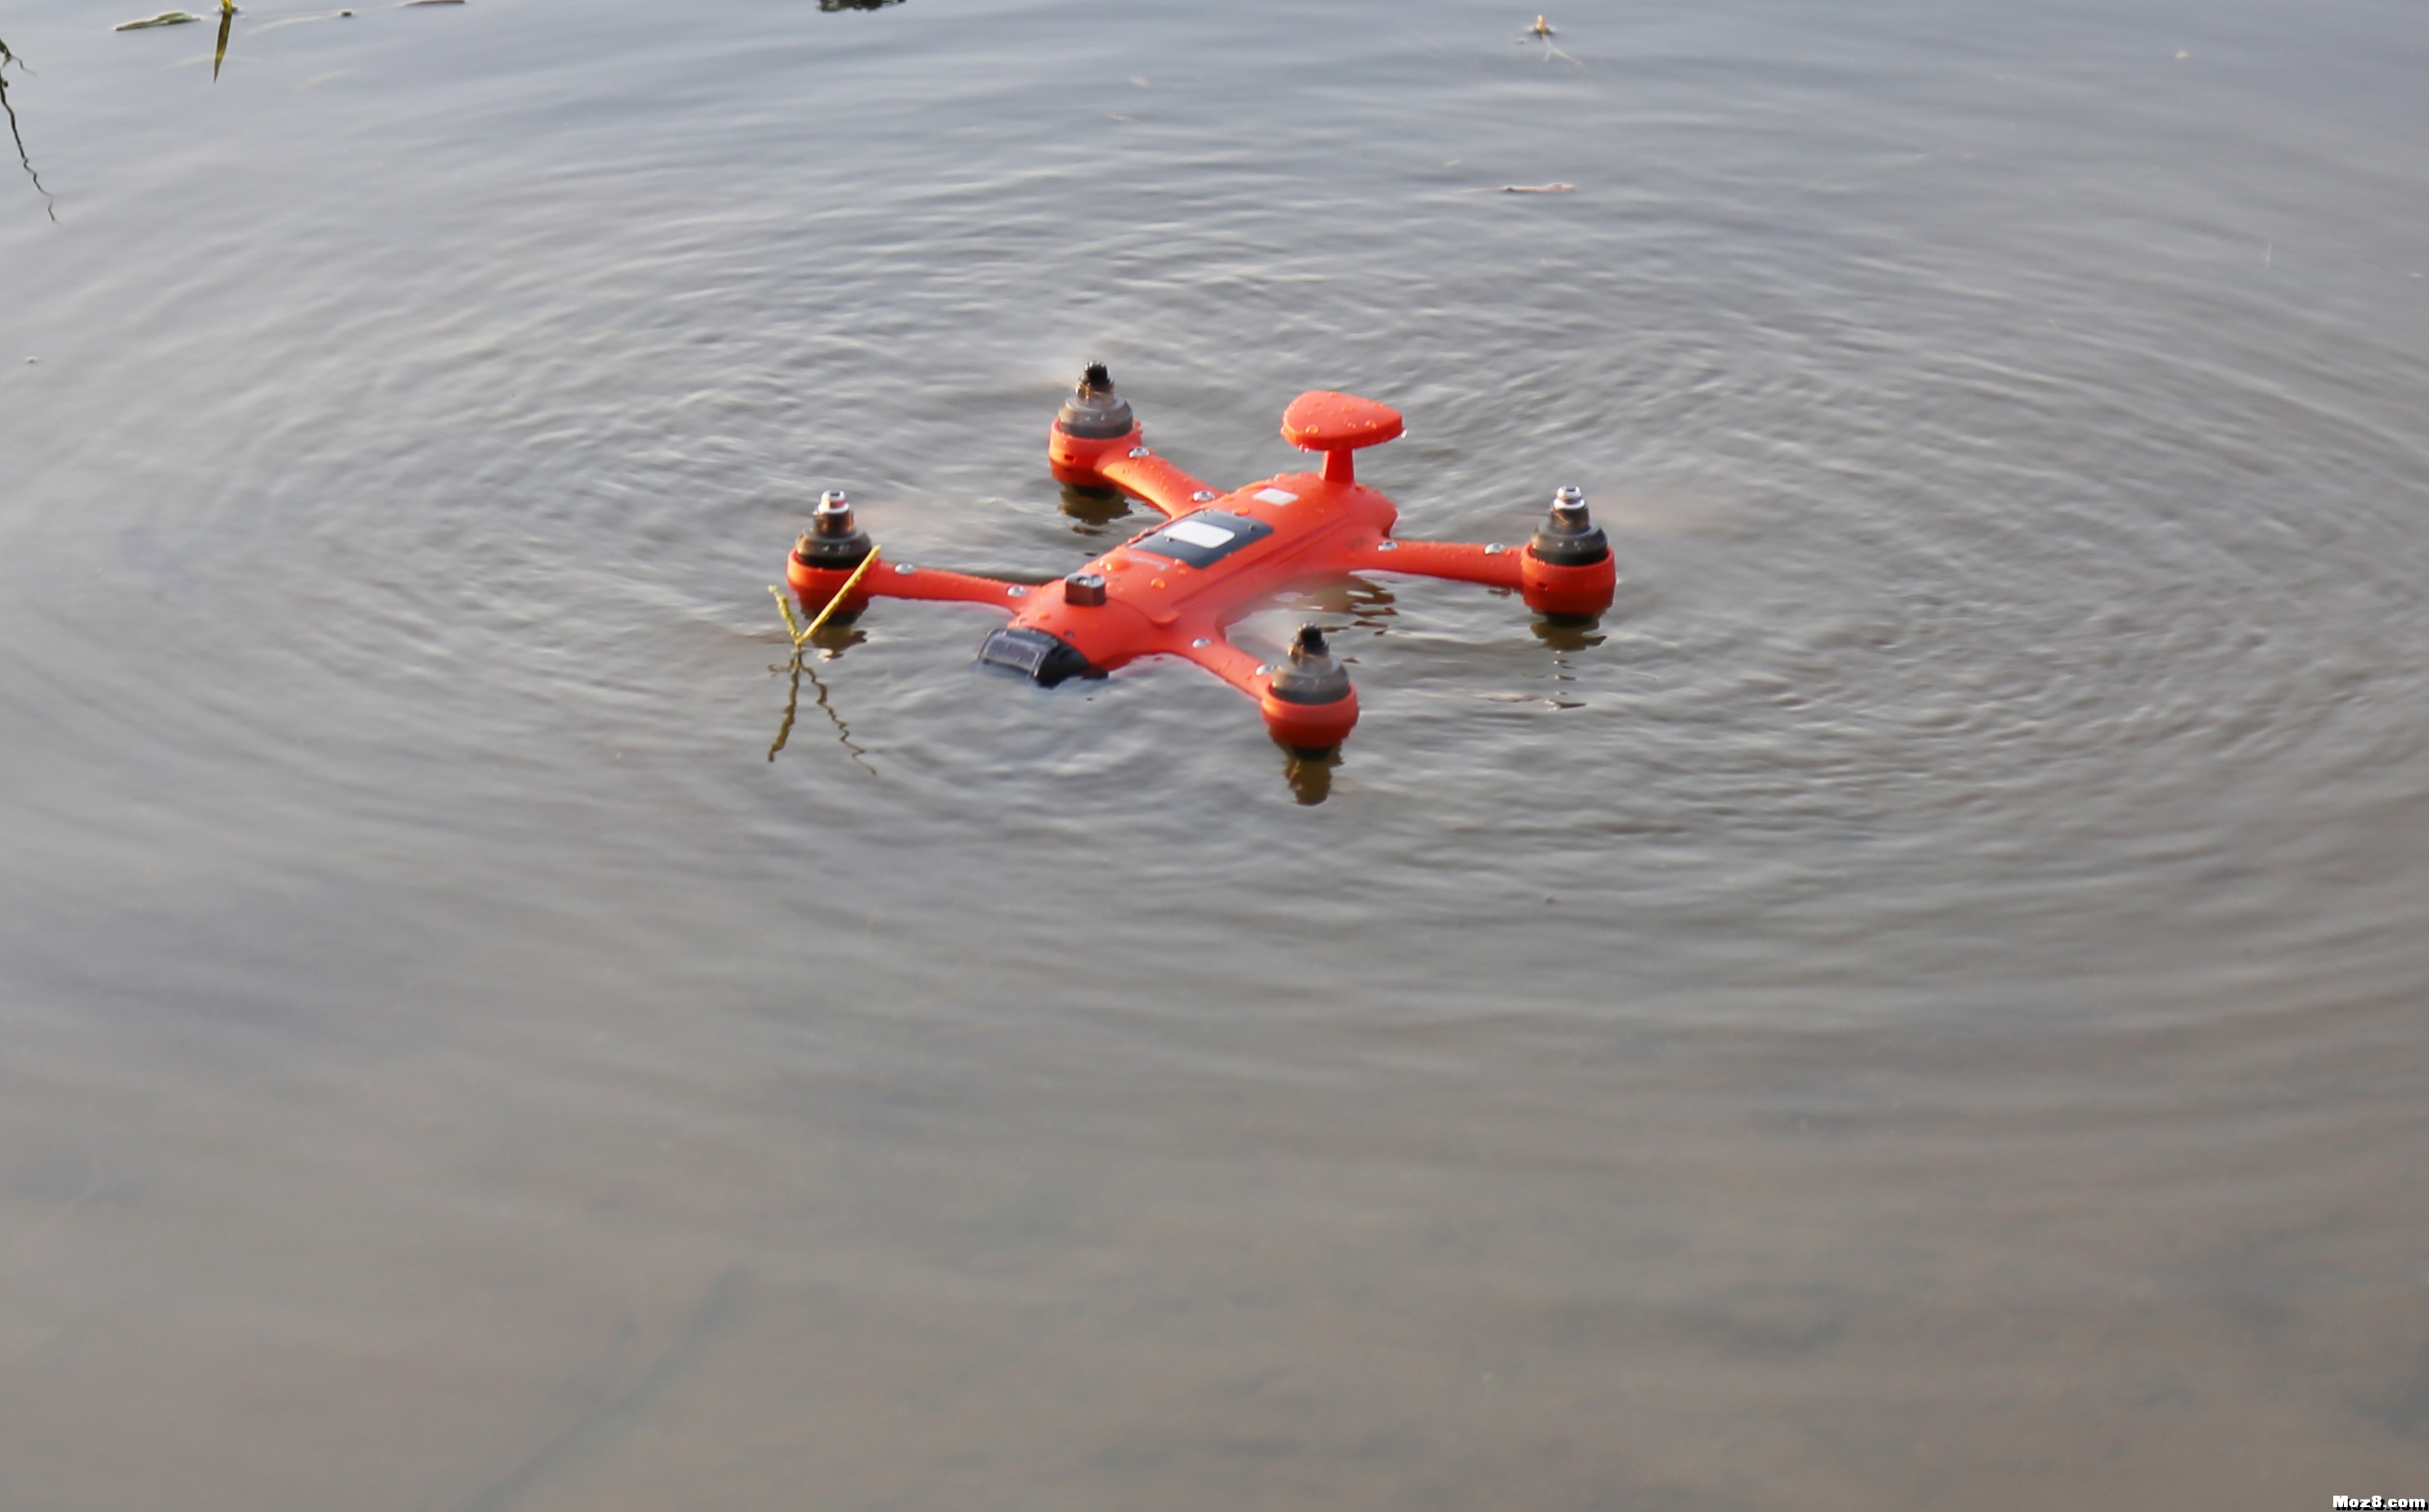 雨燕便携防水无人机，整机防水，就连遥控器都防水！ 无人机,遥控器 作者:Lesley 5350 